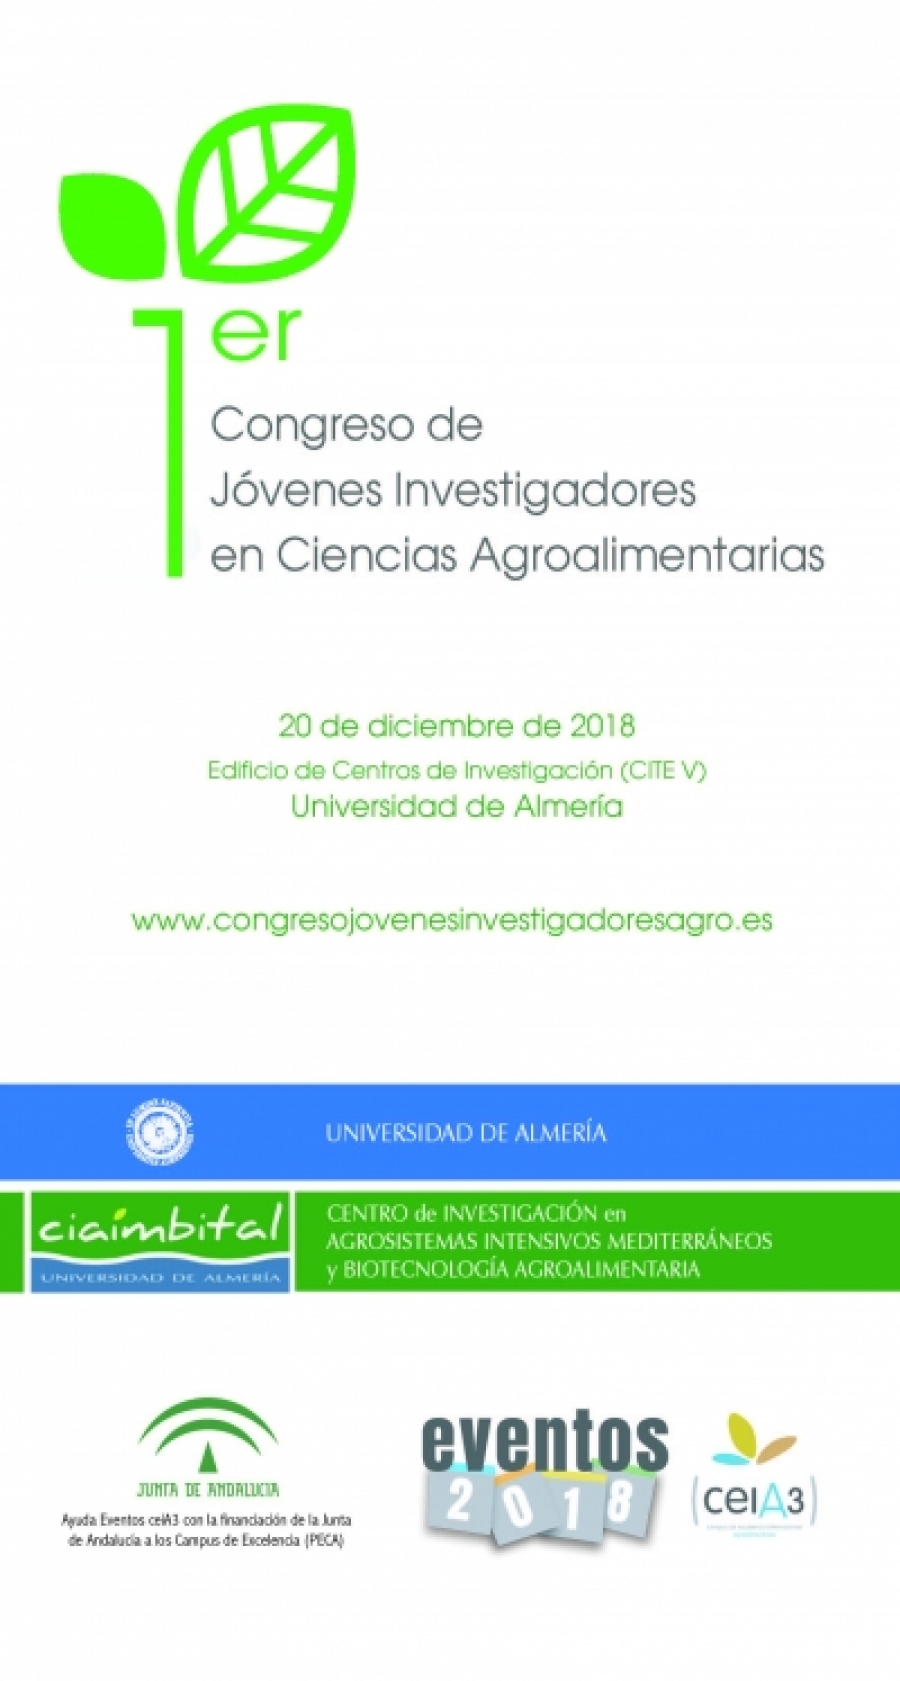 Abierto período de inscripción para el I Congreso de Jóvenes Investigadores en Ciencias Agroalimentarias